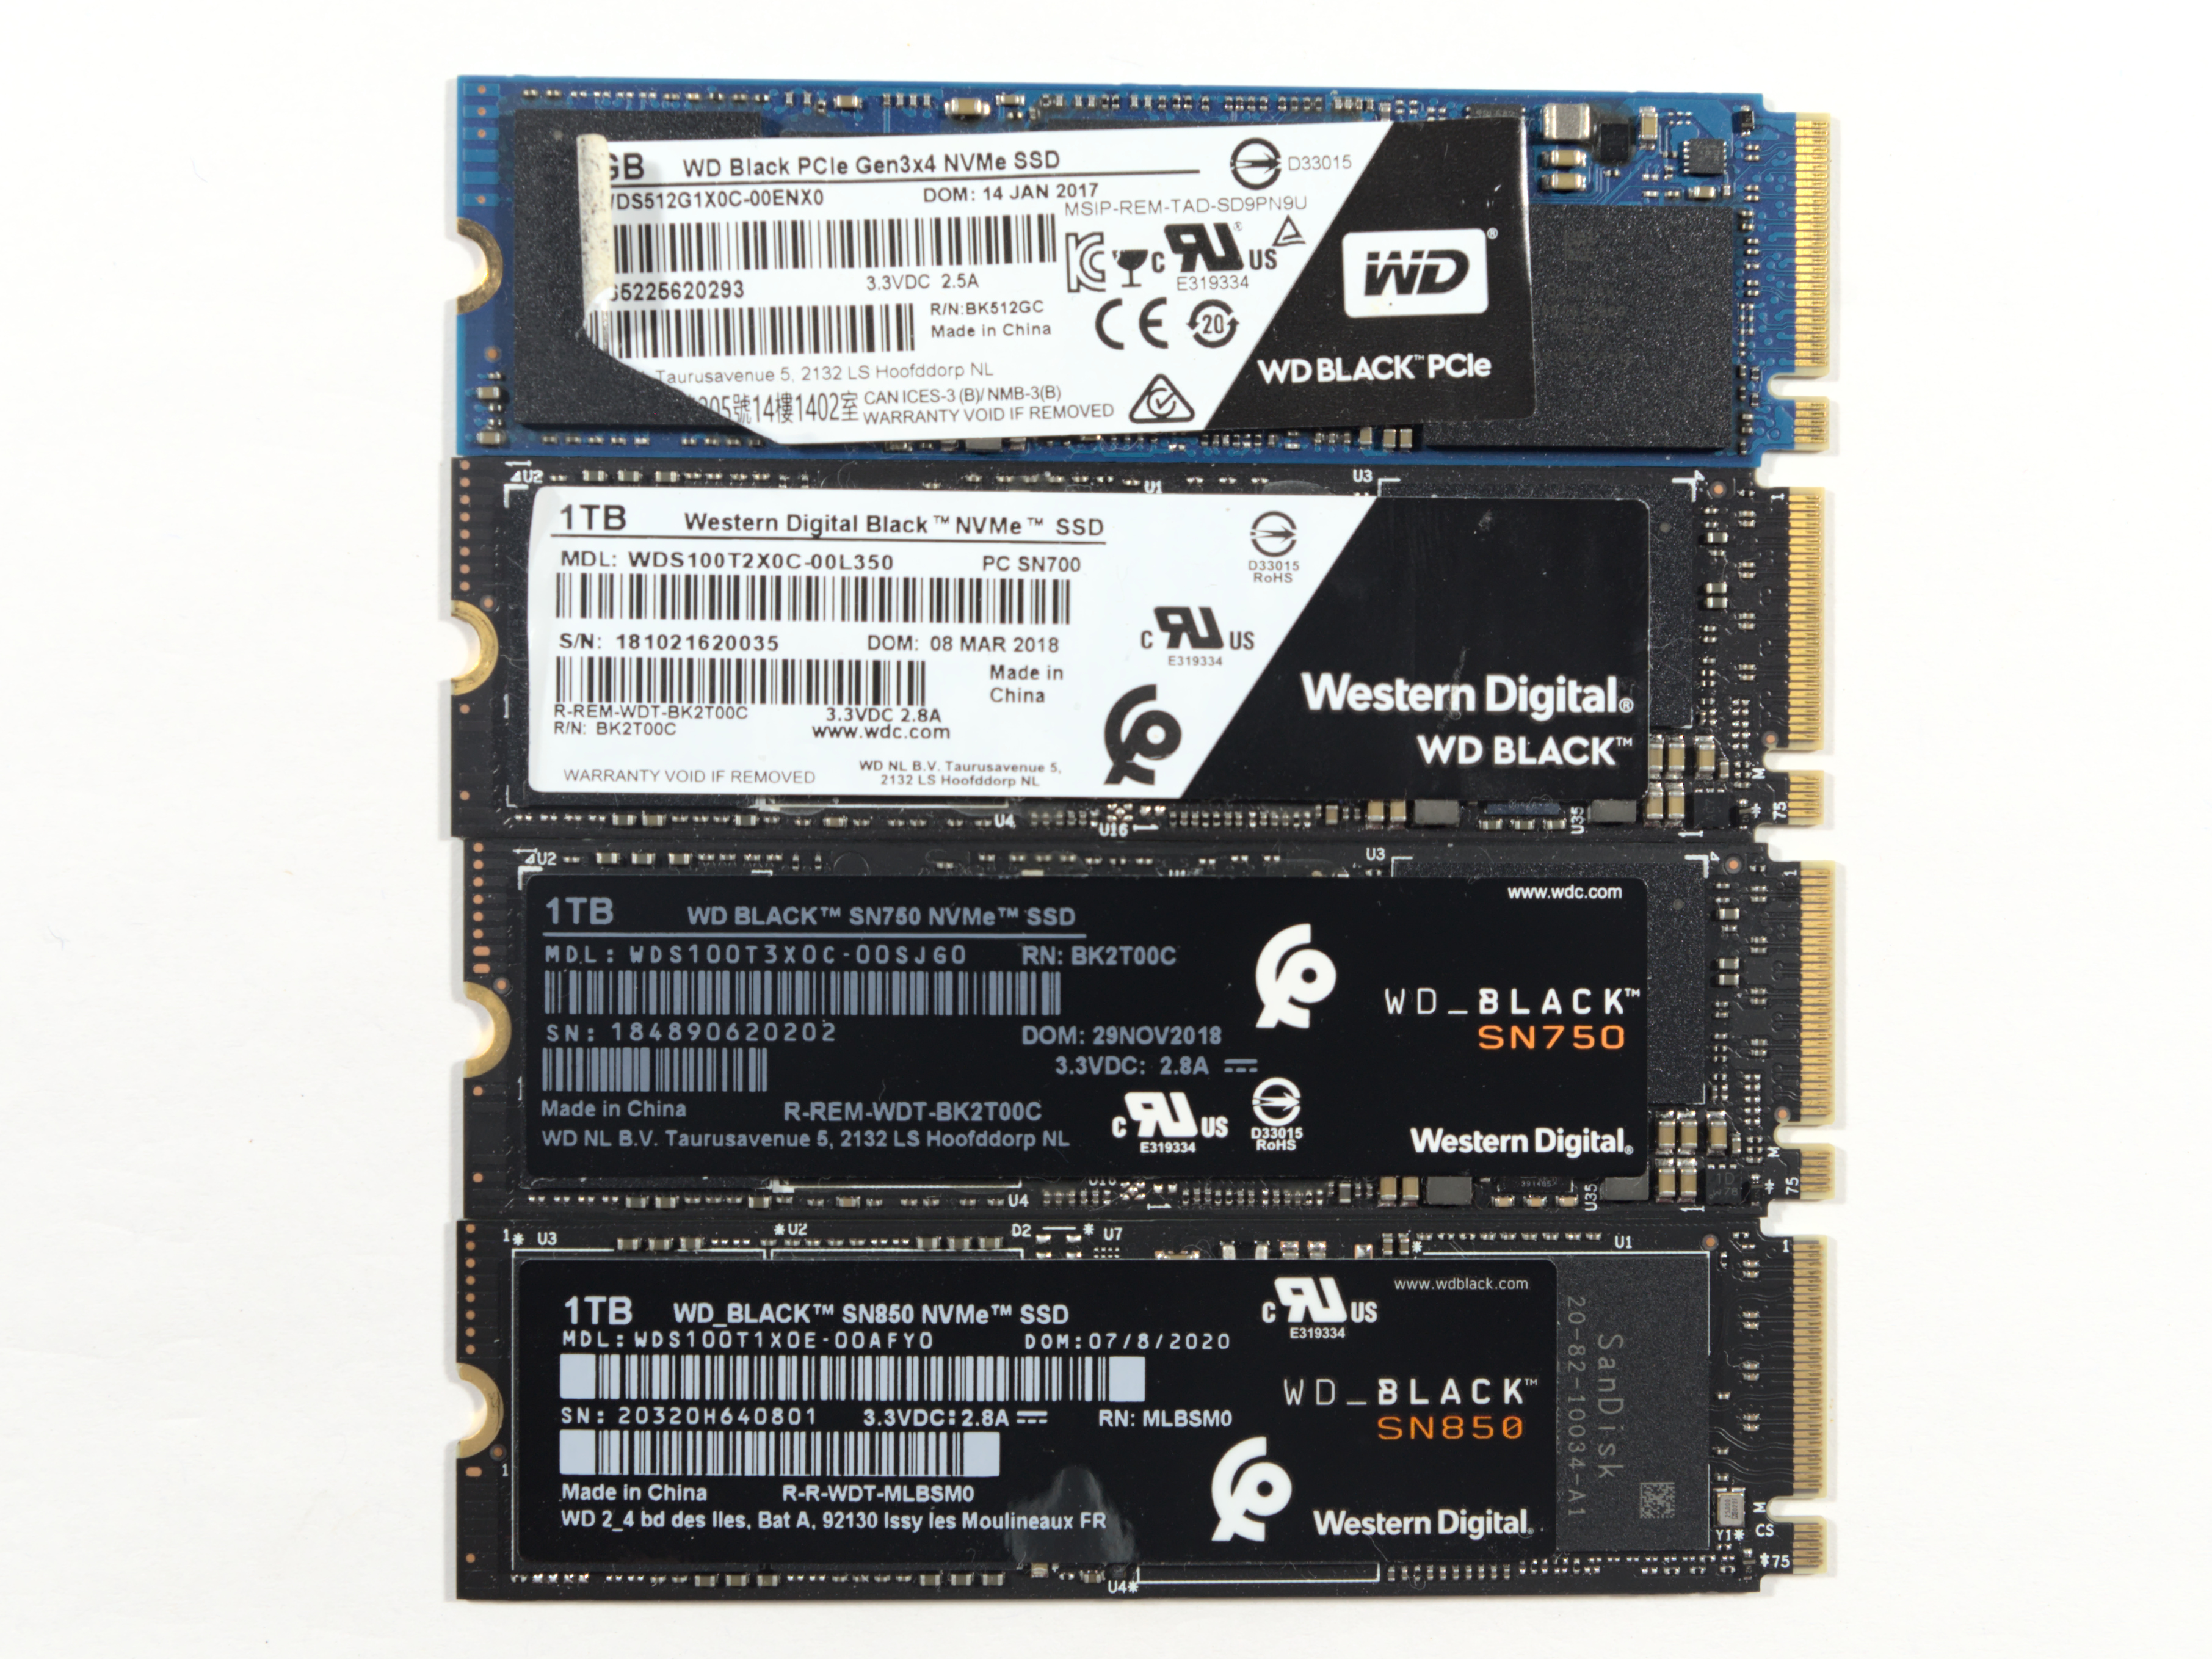 WD BLACK SN850X SSD Review 